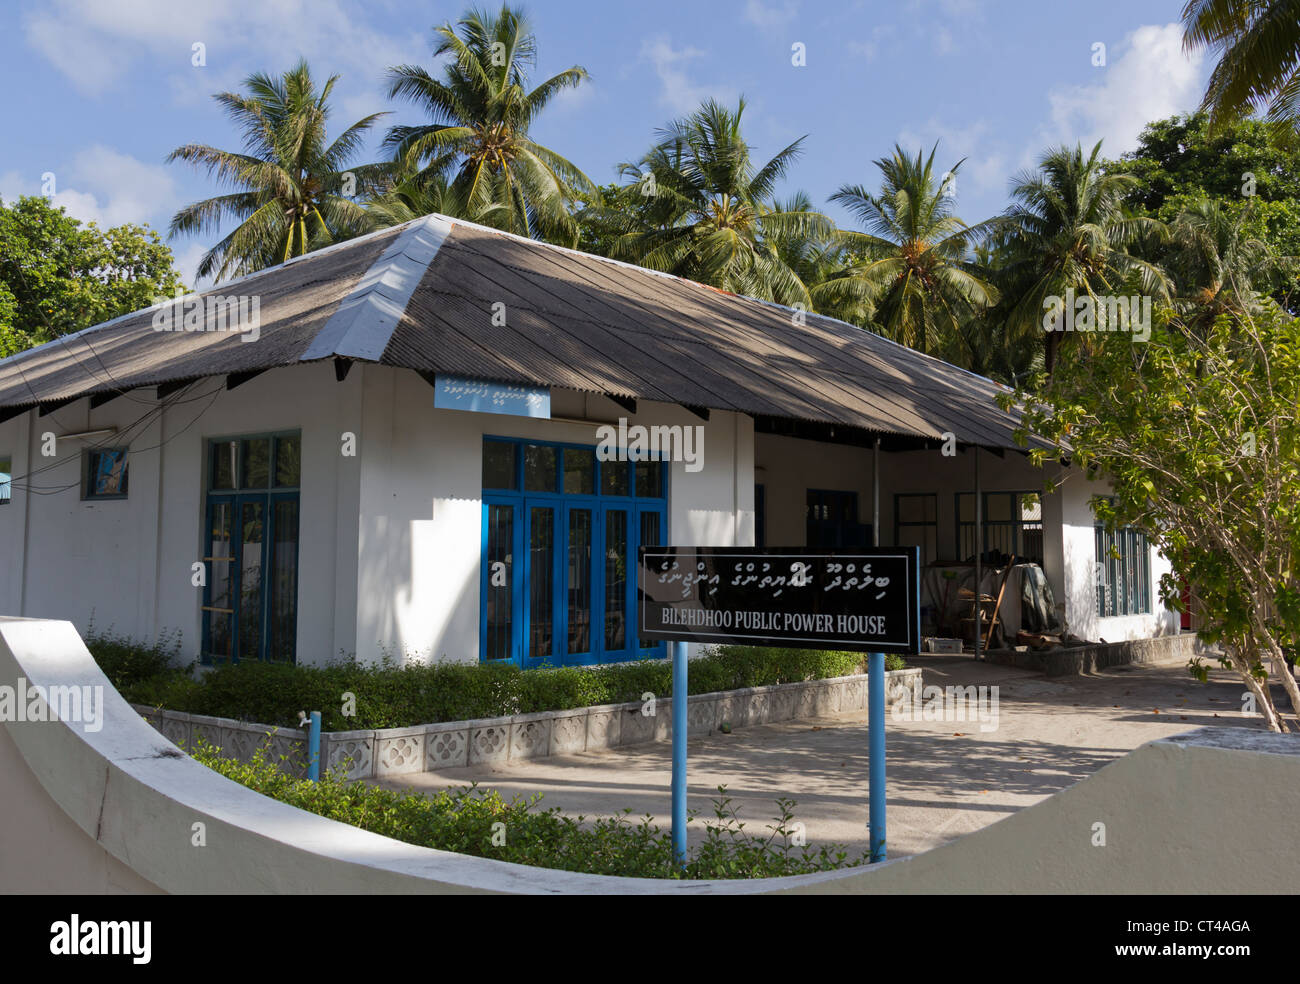 Maison Bilehdhoo la puissance publique dans les Maldives qui génère de l'électricité de l'île Banque D'Images